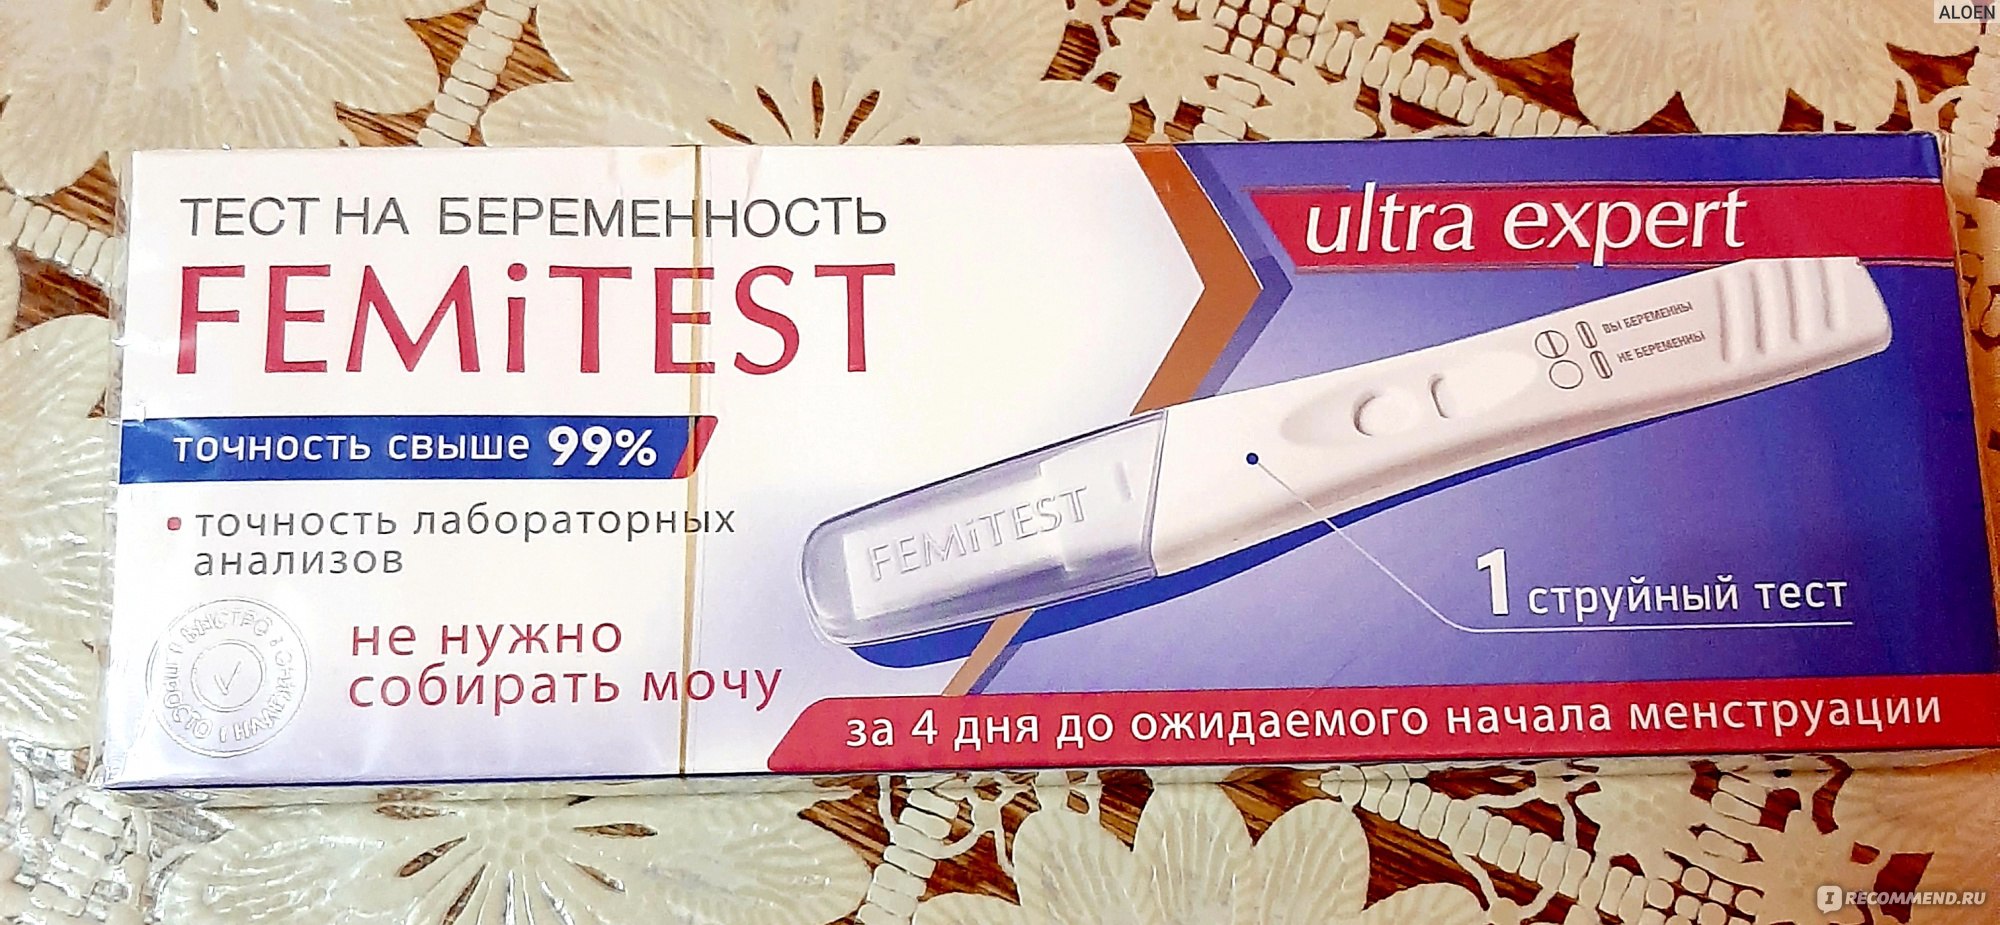 Положительный тест на беременность femitest фото